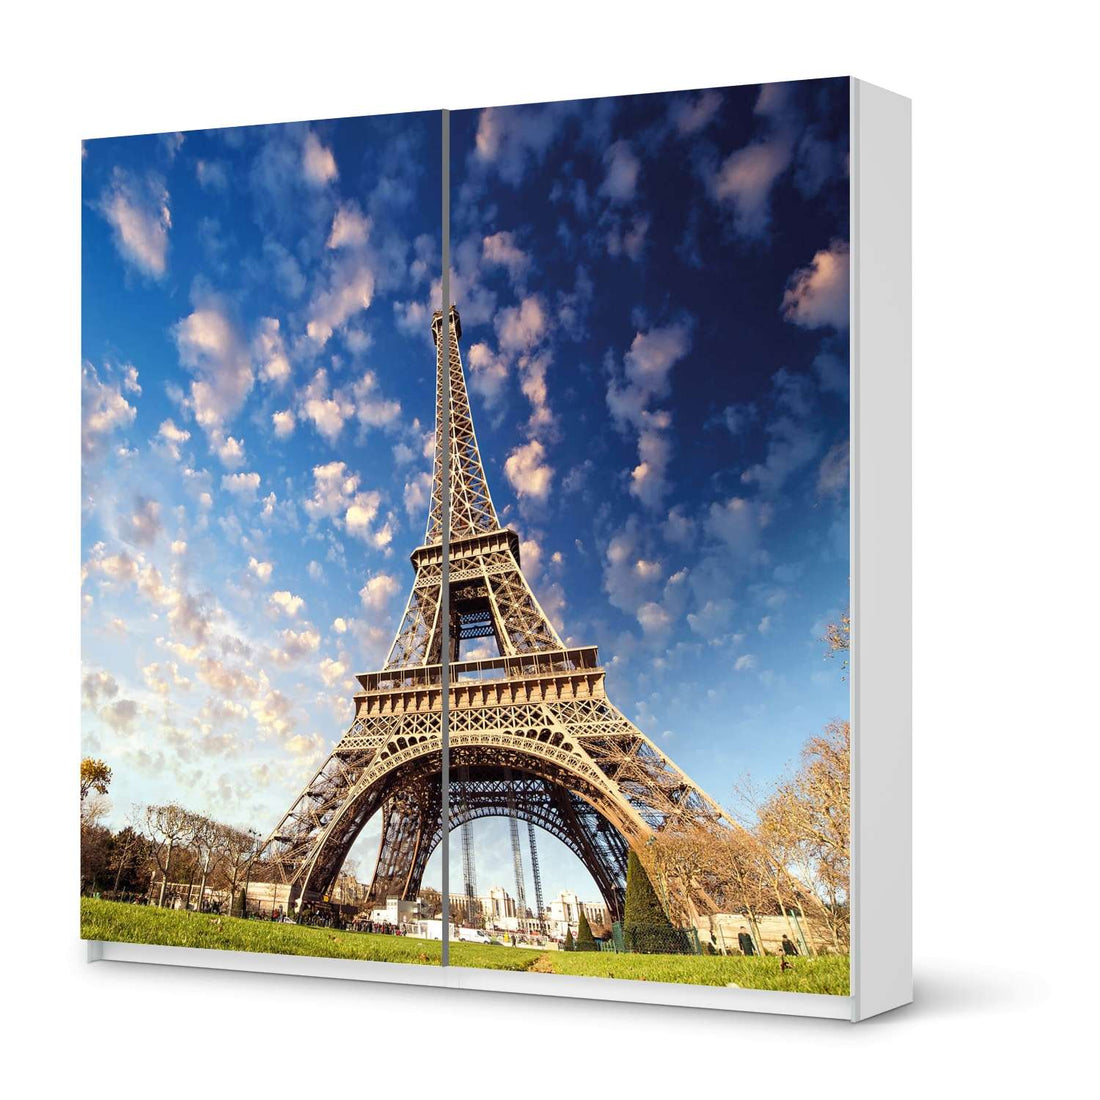 Möbel Klebefolie La Tour Eiffel - IKEA Pax Schrank 201 cm Höhe - Schiebetür - weiss